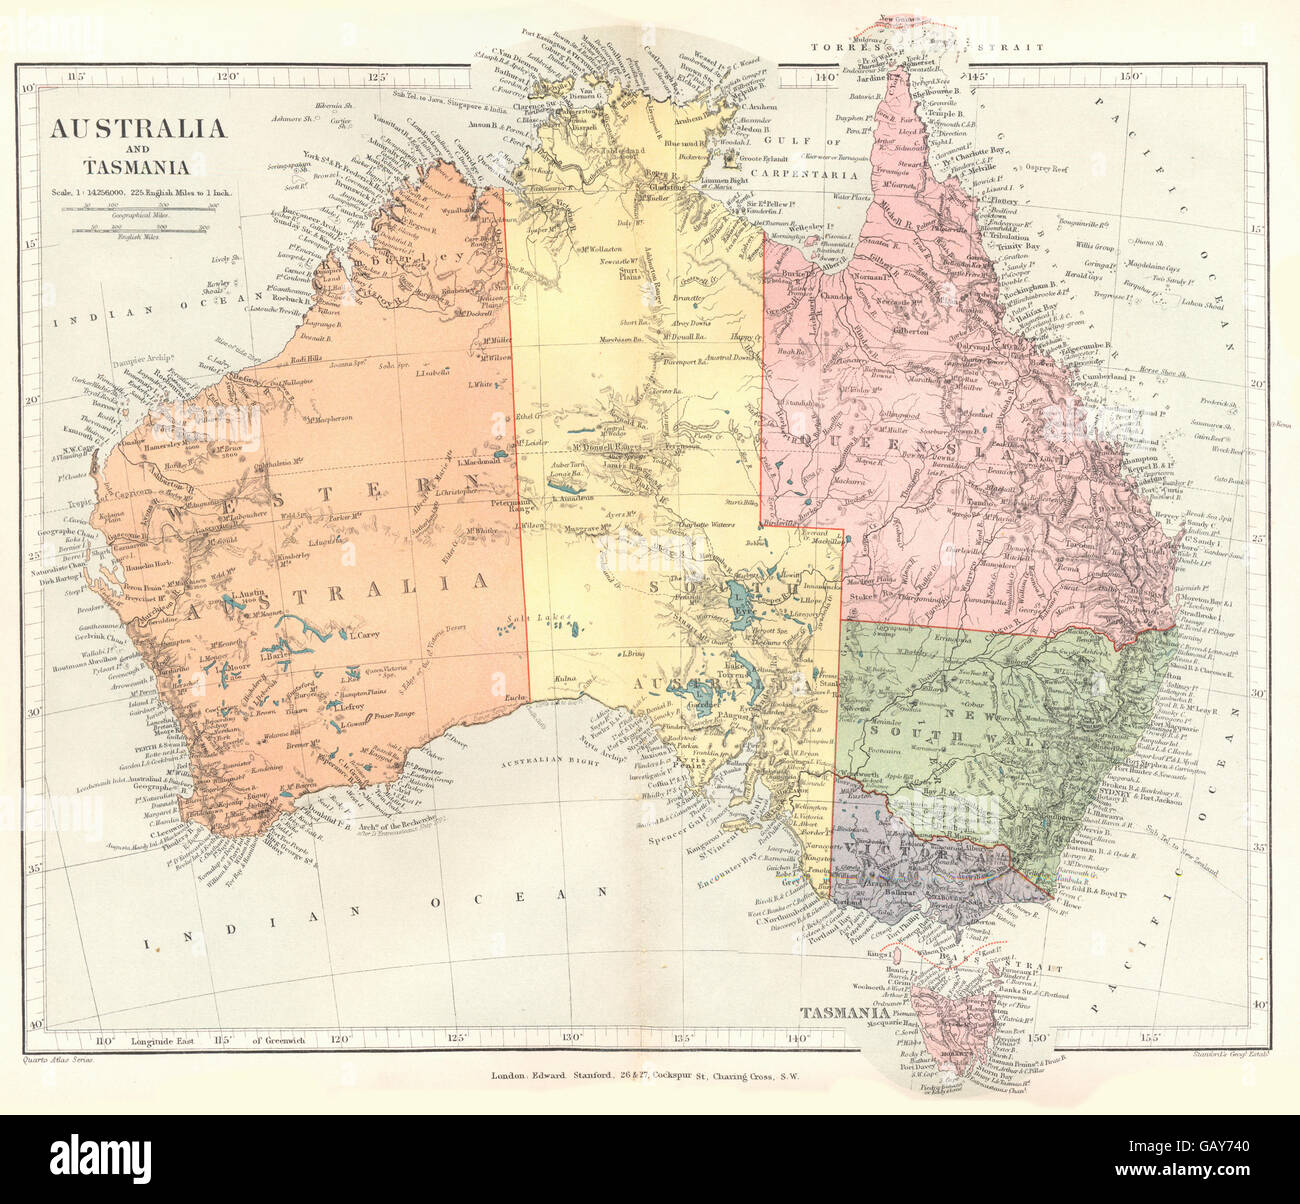 AUSTRALIA: Australia and Tasmania. Stanford, 1892 antique map Stock Photo